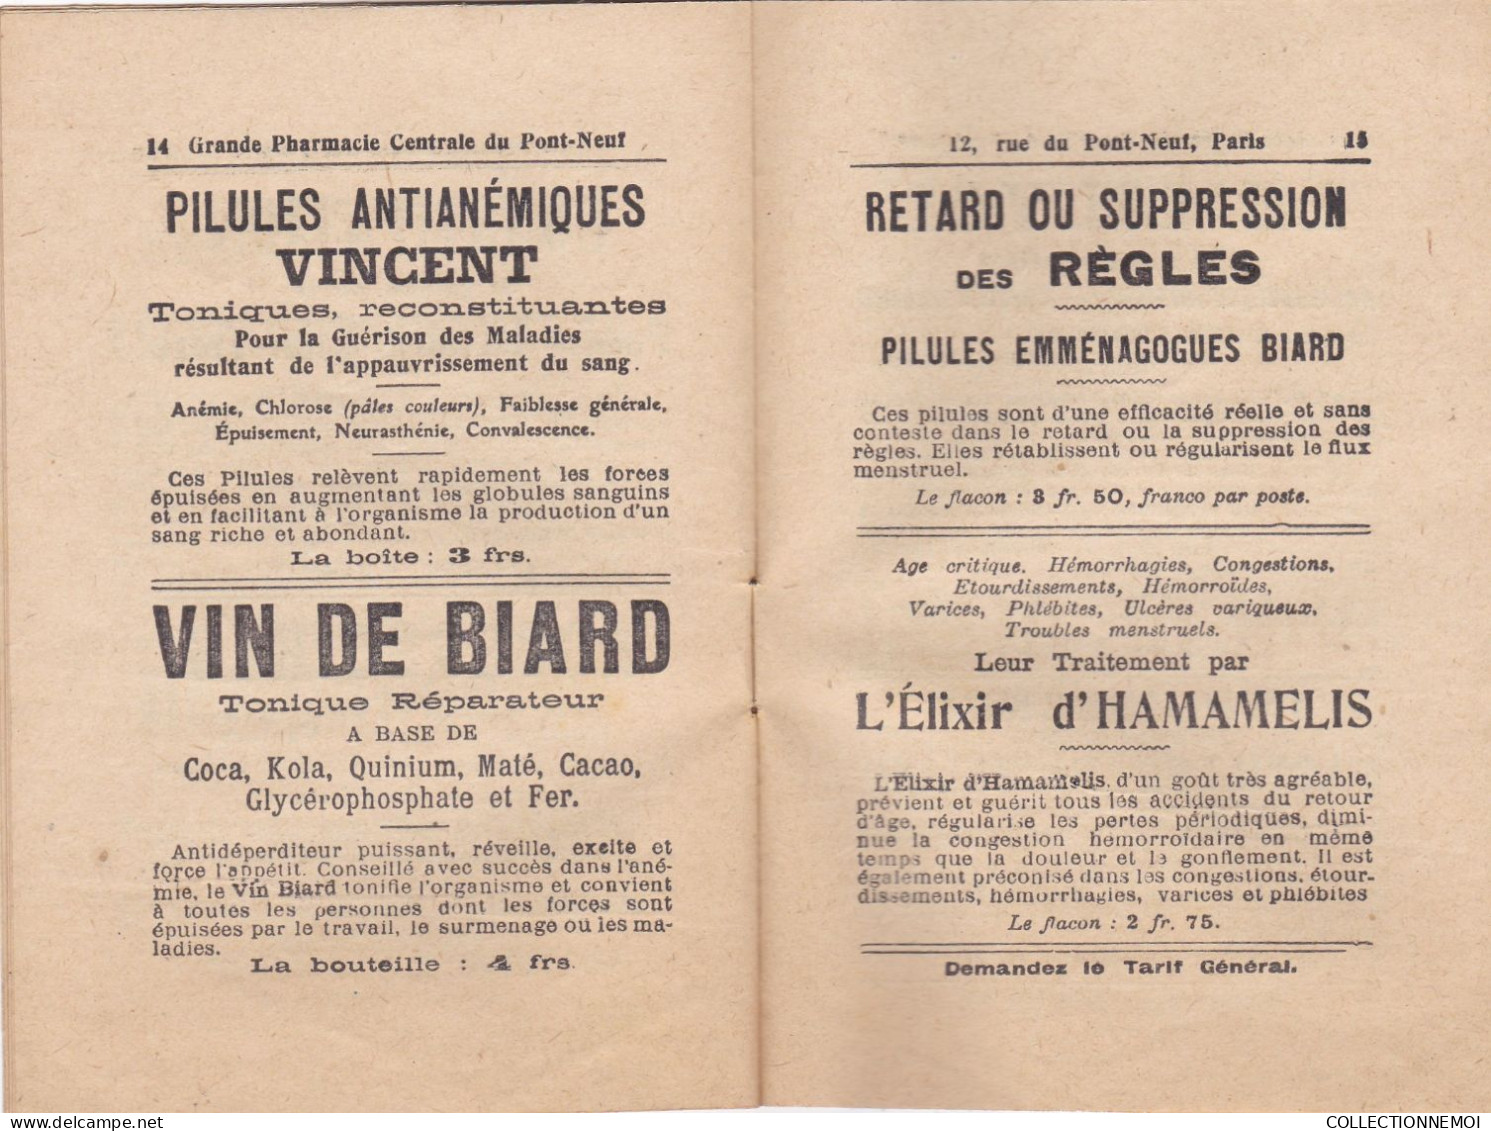 SUPERBE ,,,,,,,,,,,catalogue de la PHARMACIE  " grande pharmacie centrale du pont neuf " PARIS ,,18 pages avec pub